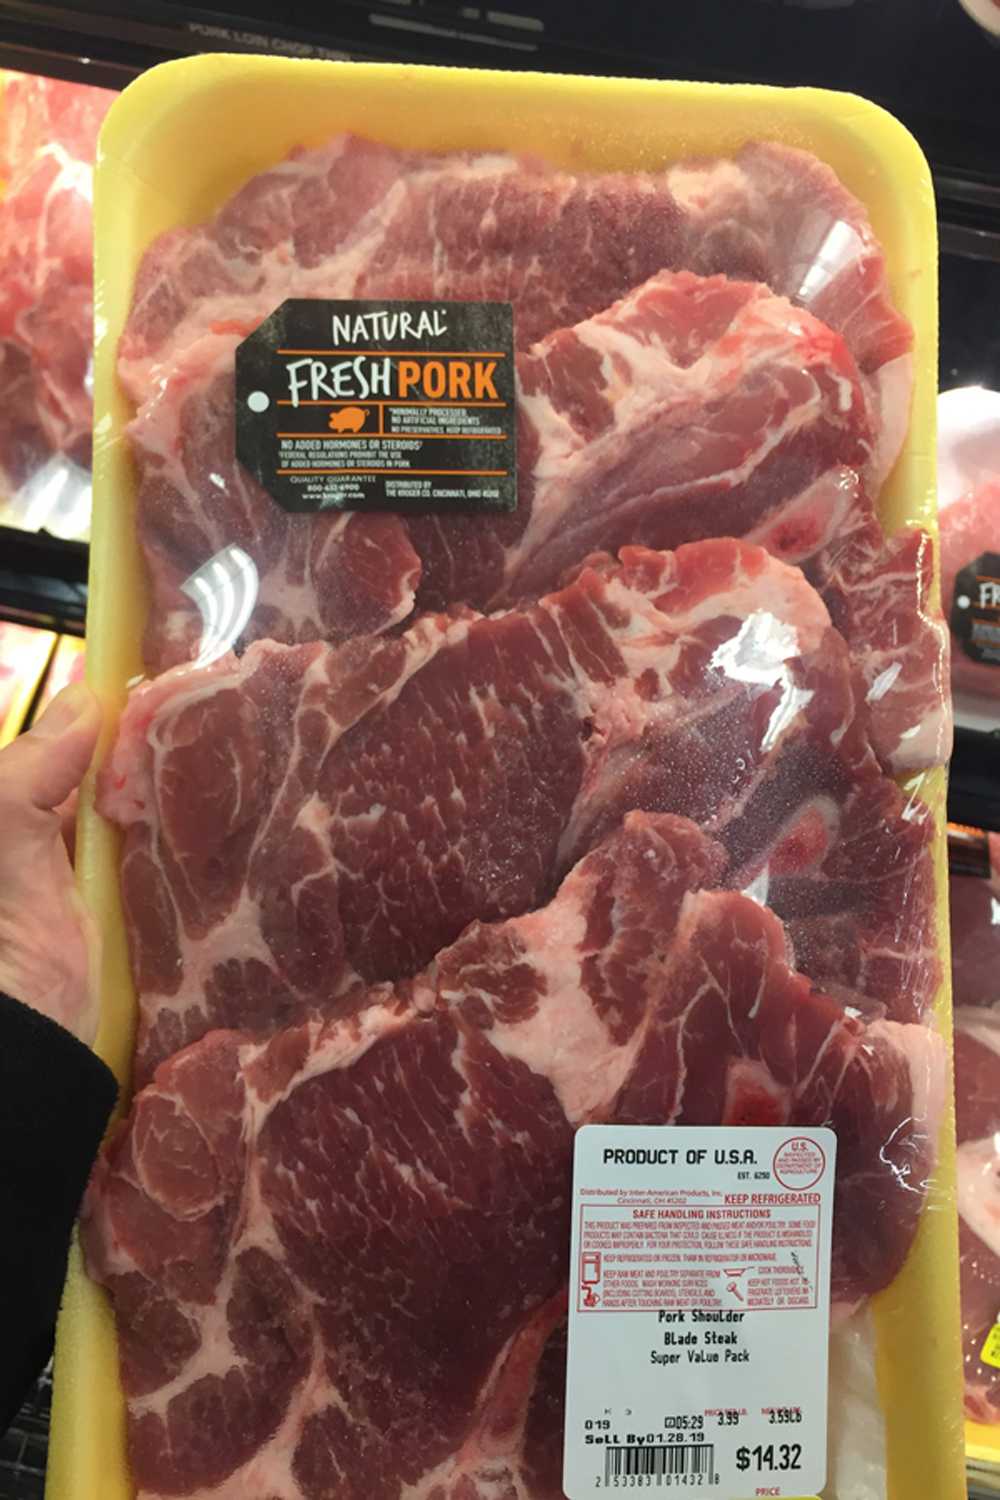 Raw pork shoulder blade steaks, packaged for sale.